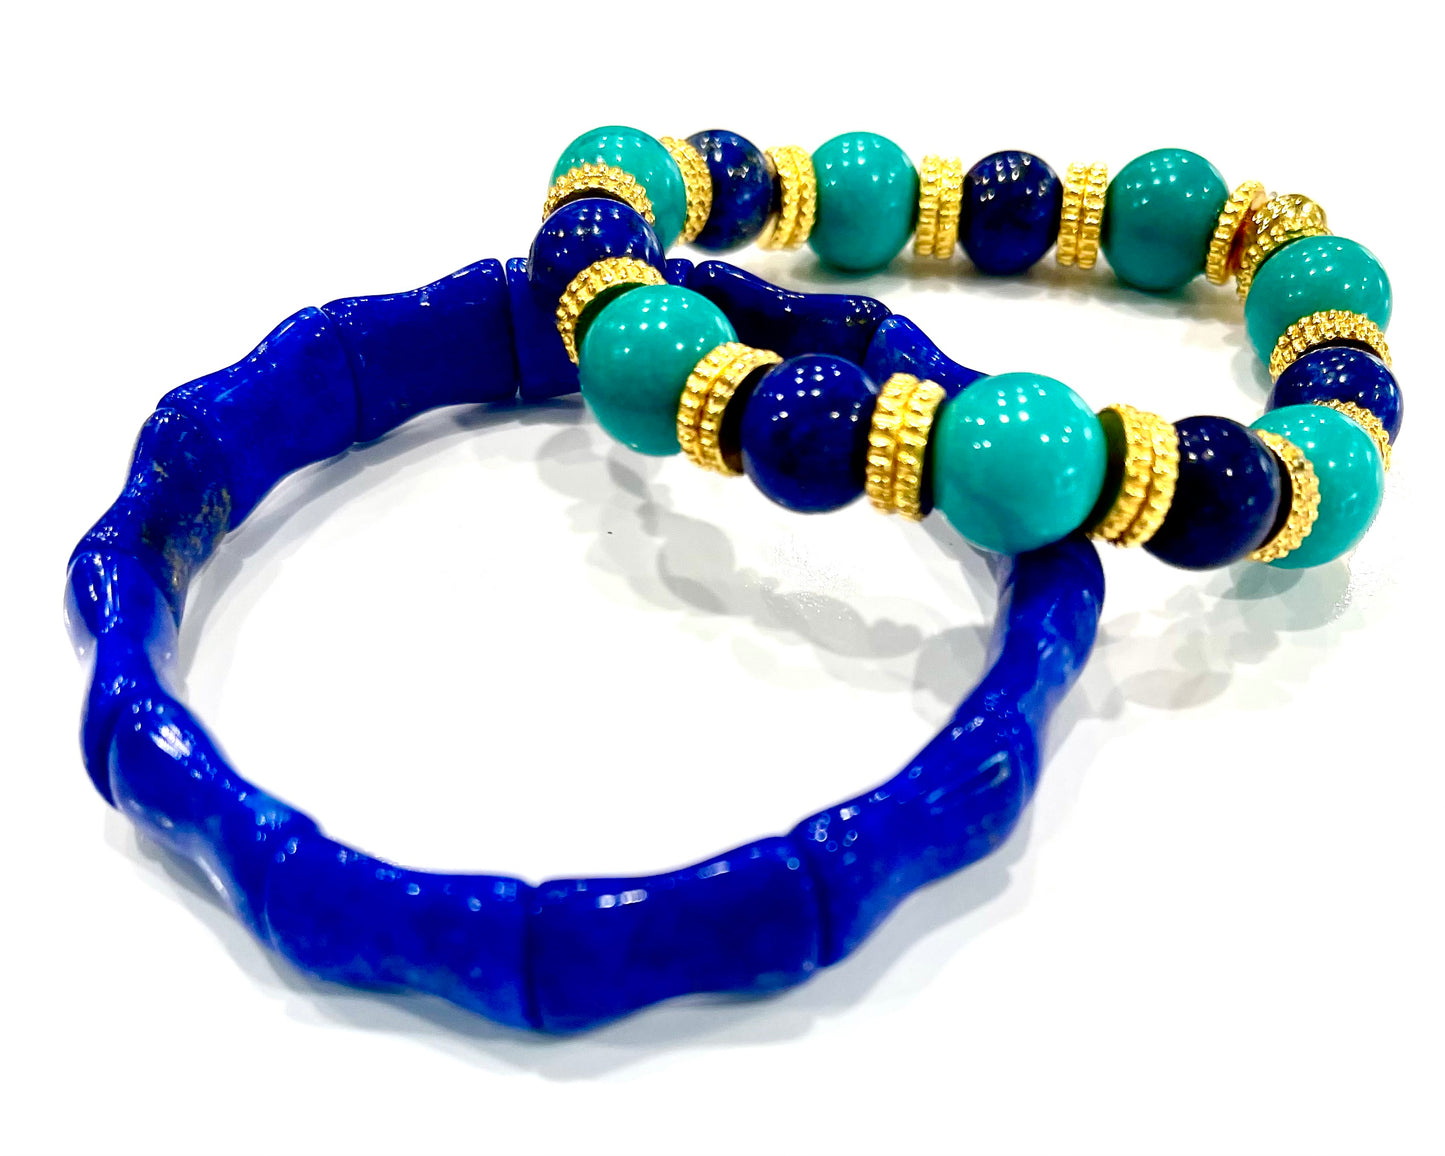 Lapis Lazuli and Turquoise Gemstone Bracelet Stack